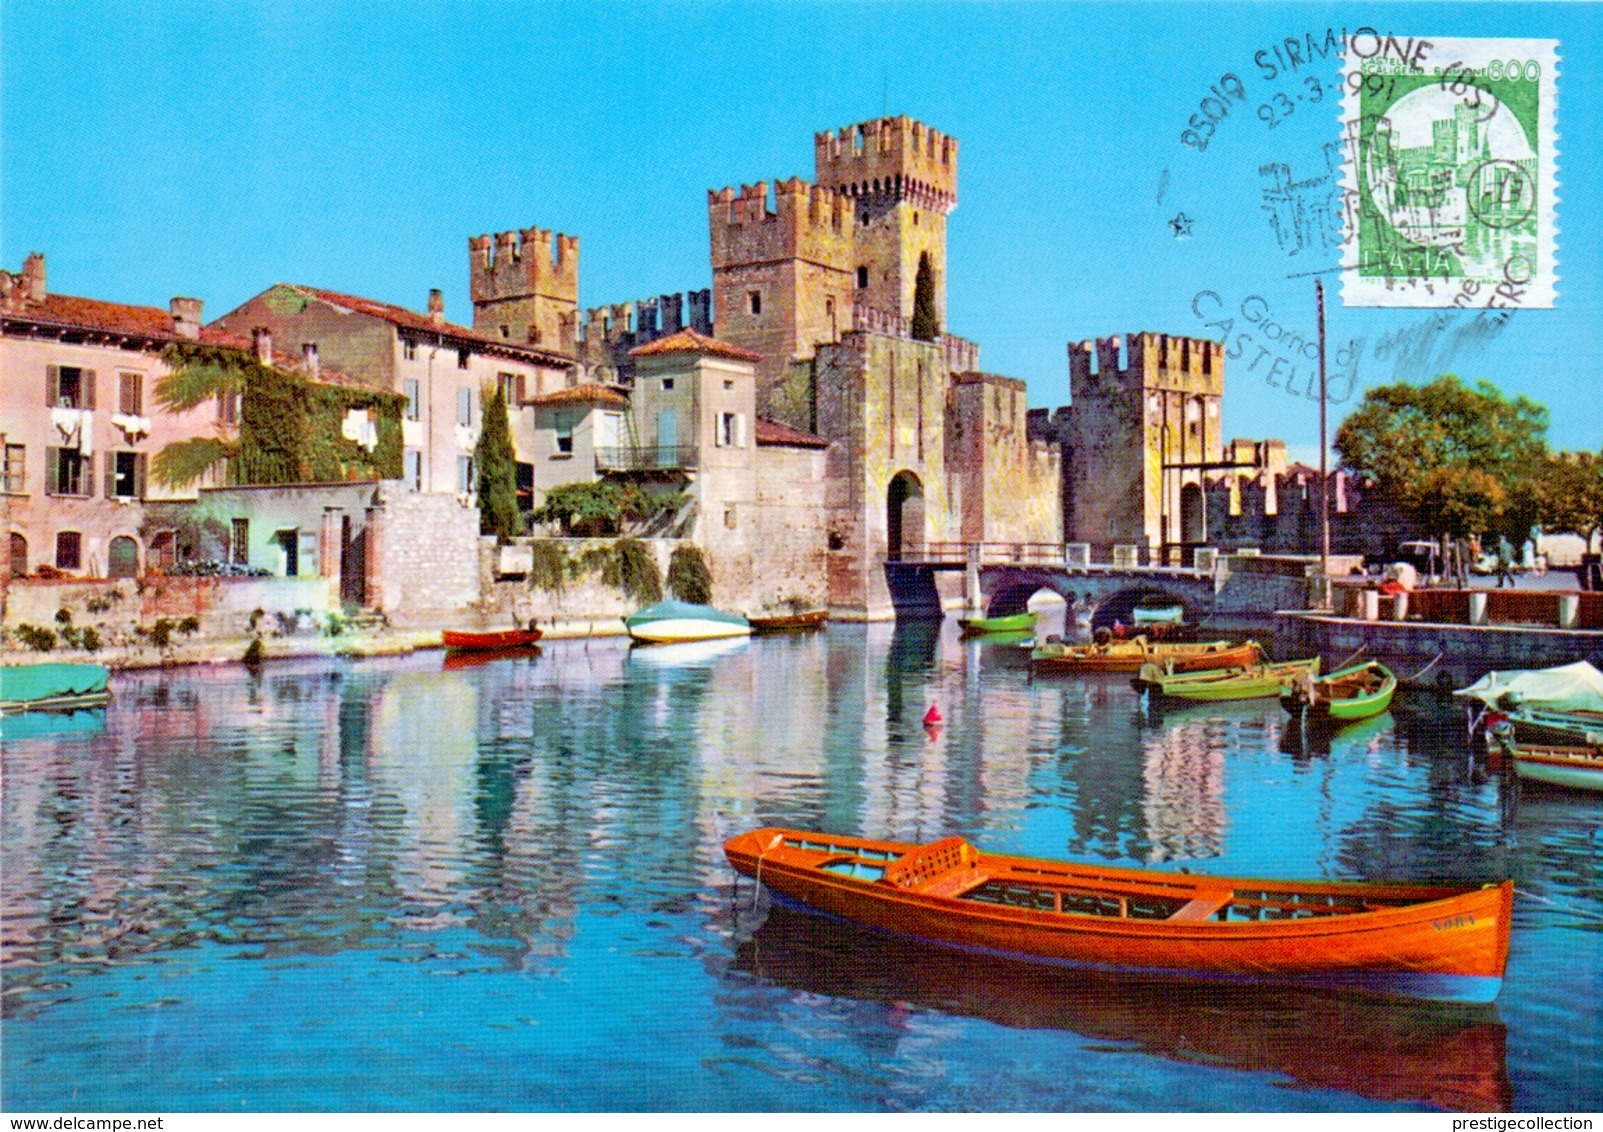 LAGO DI GARDA  SIRMIONE CASTELLO SCALIGERO  1991 MAXIMUM POST CARD (GENN200257) - Esposizioni Filateliche